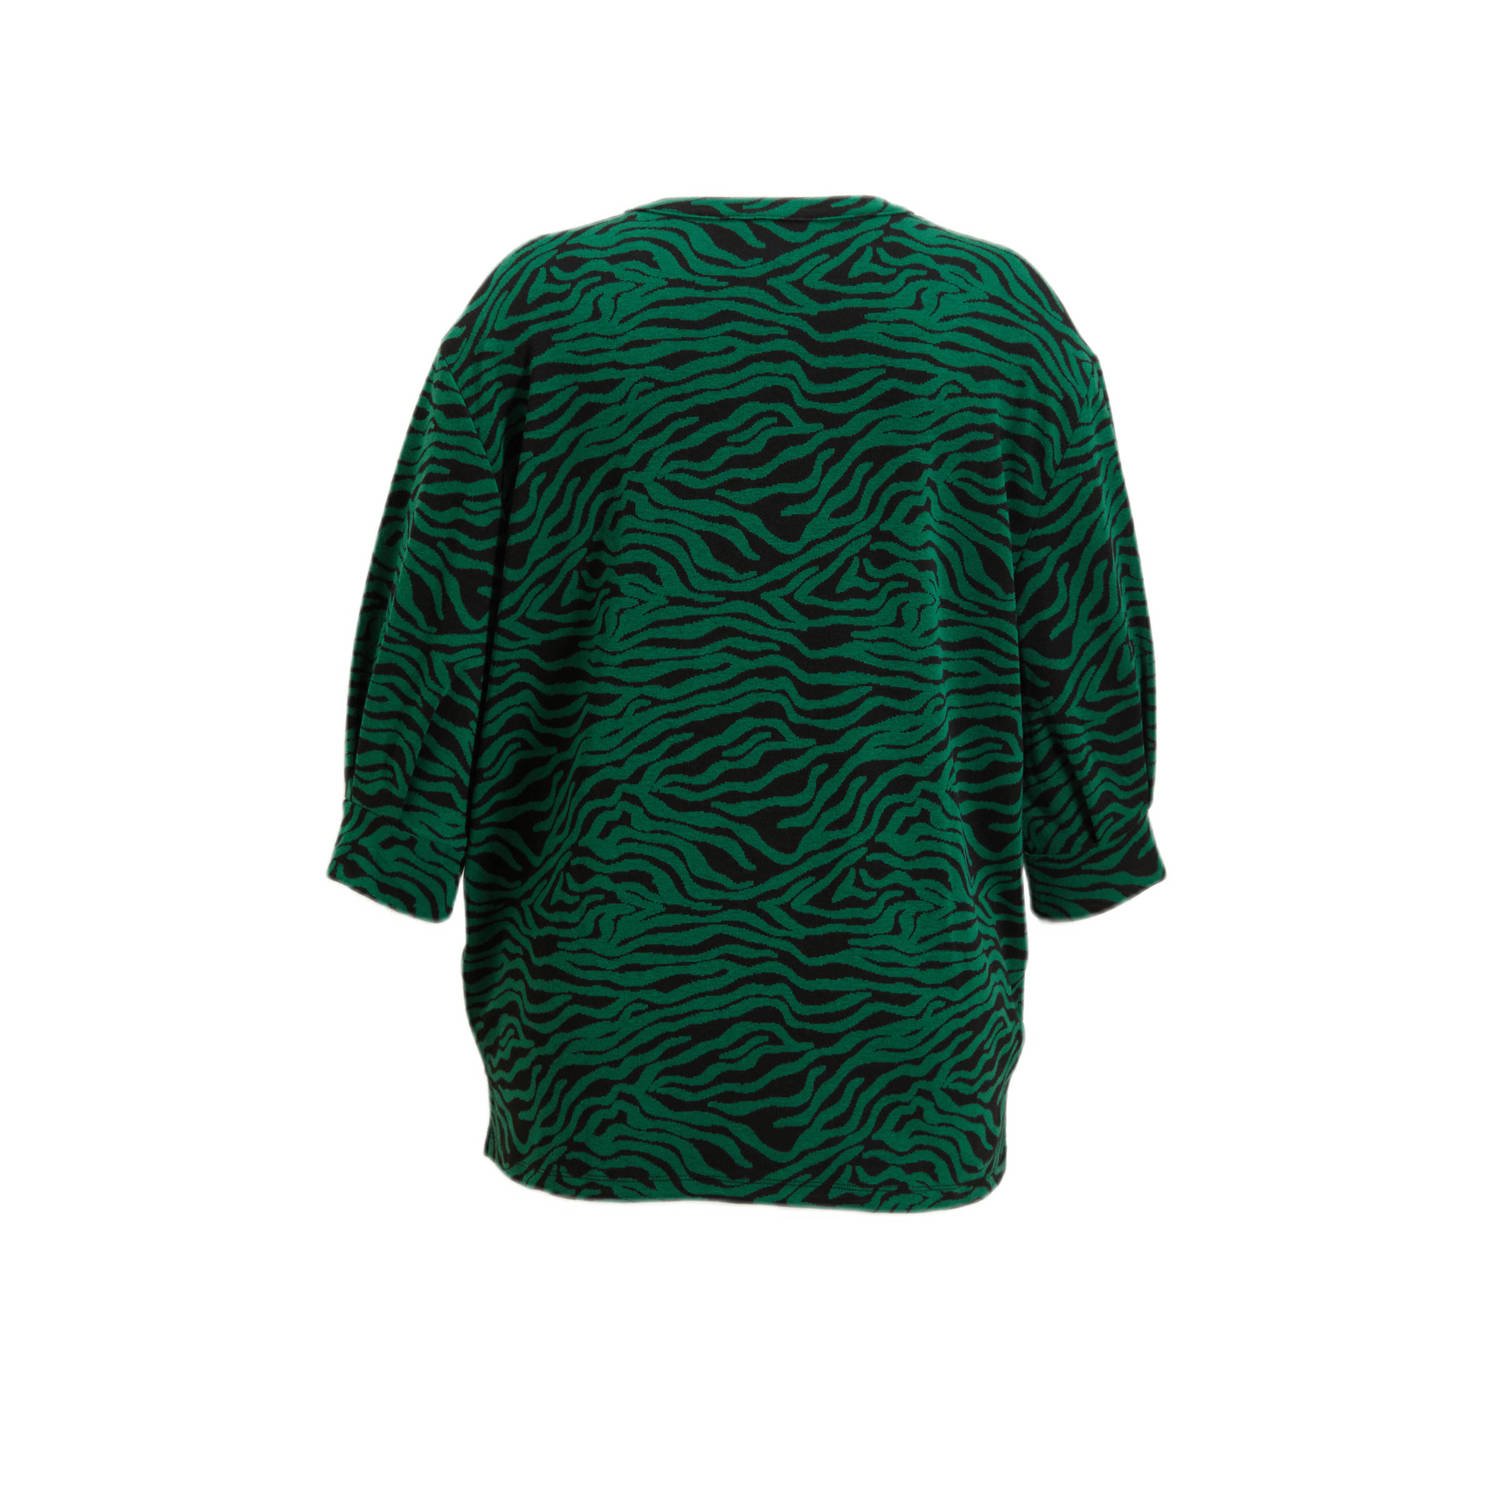 GREAT LOOKS tuniek met zebraprint groen zwart